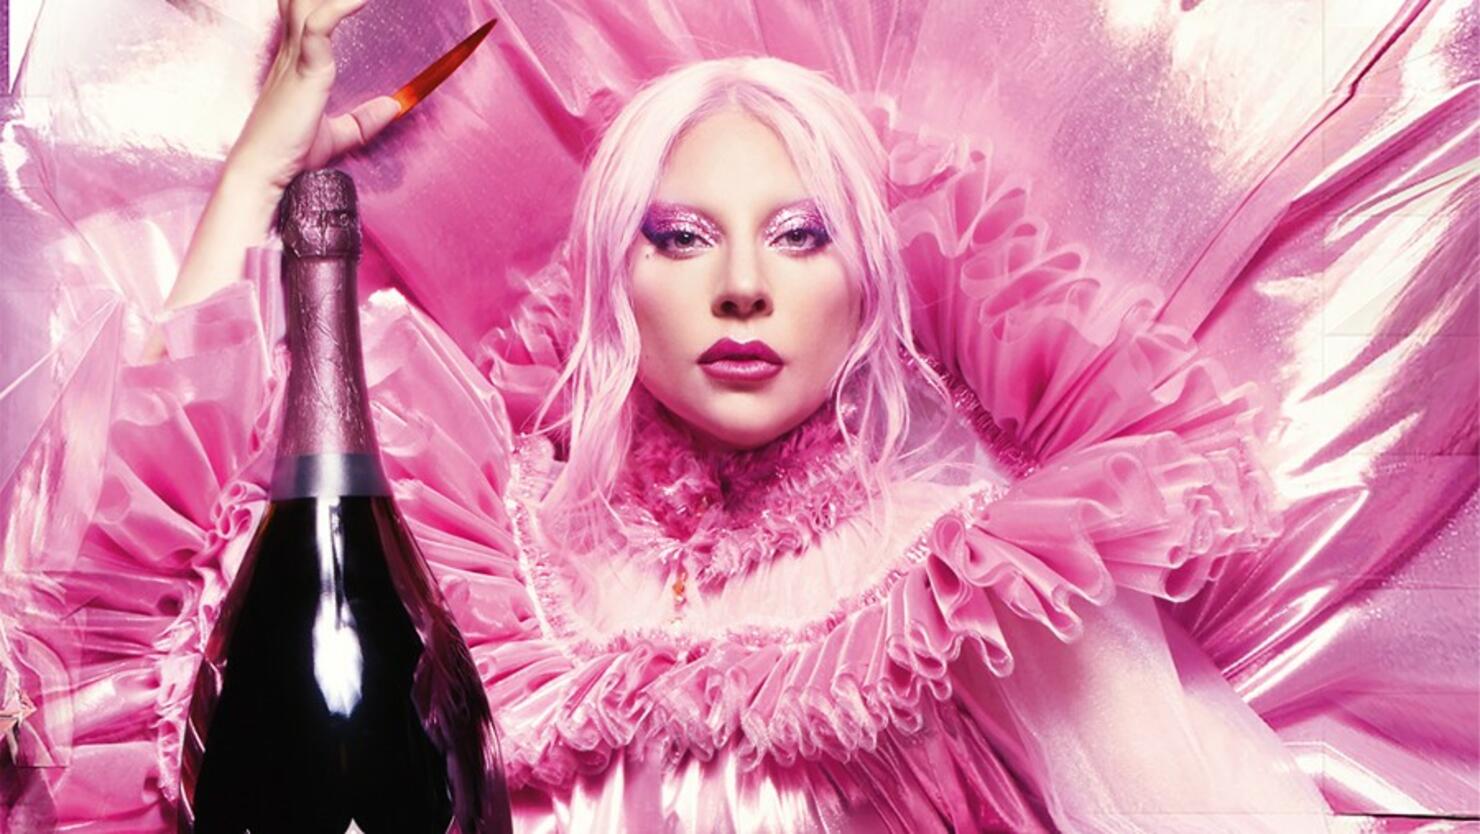 Dom Pérignon x Lady Gaga: the power of creative freedom - LVMH